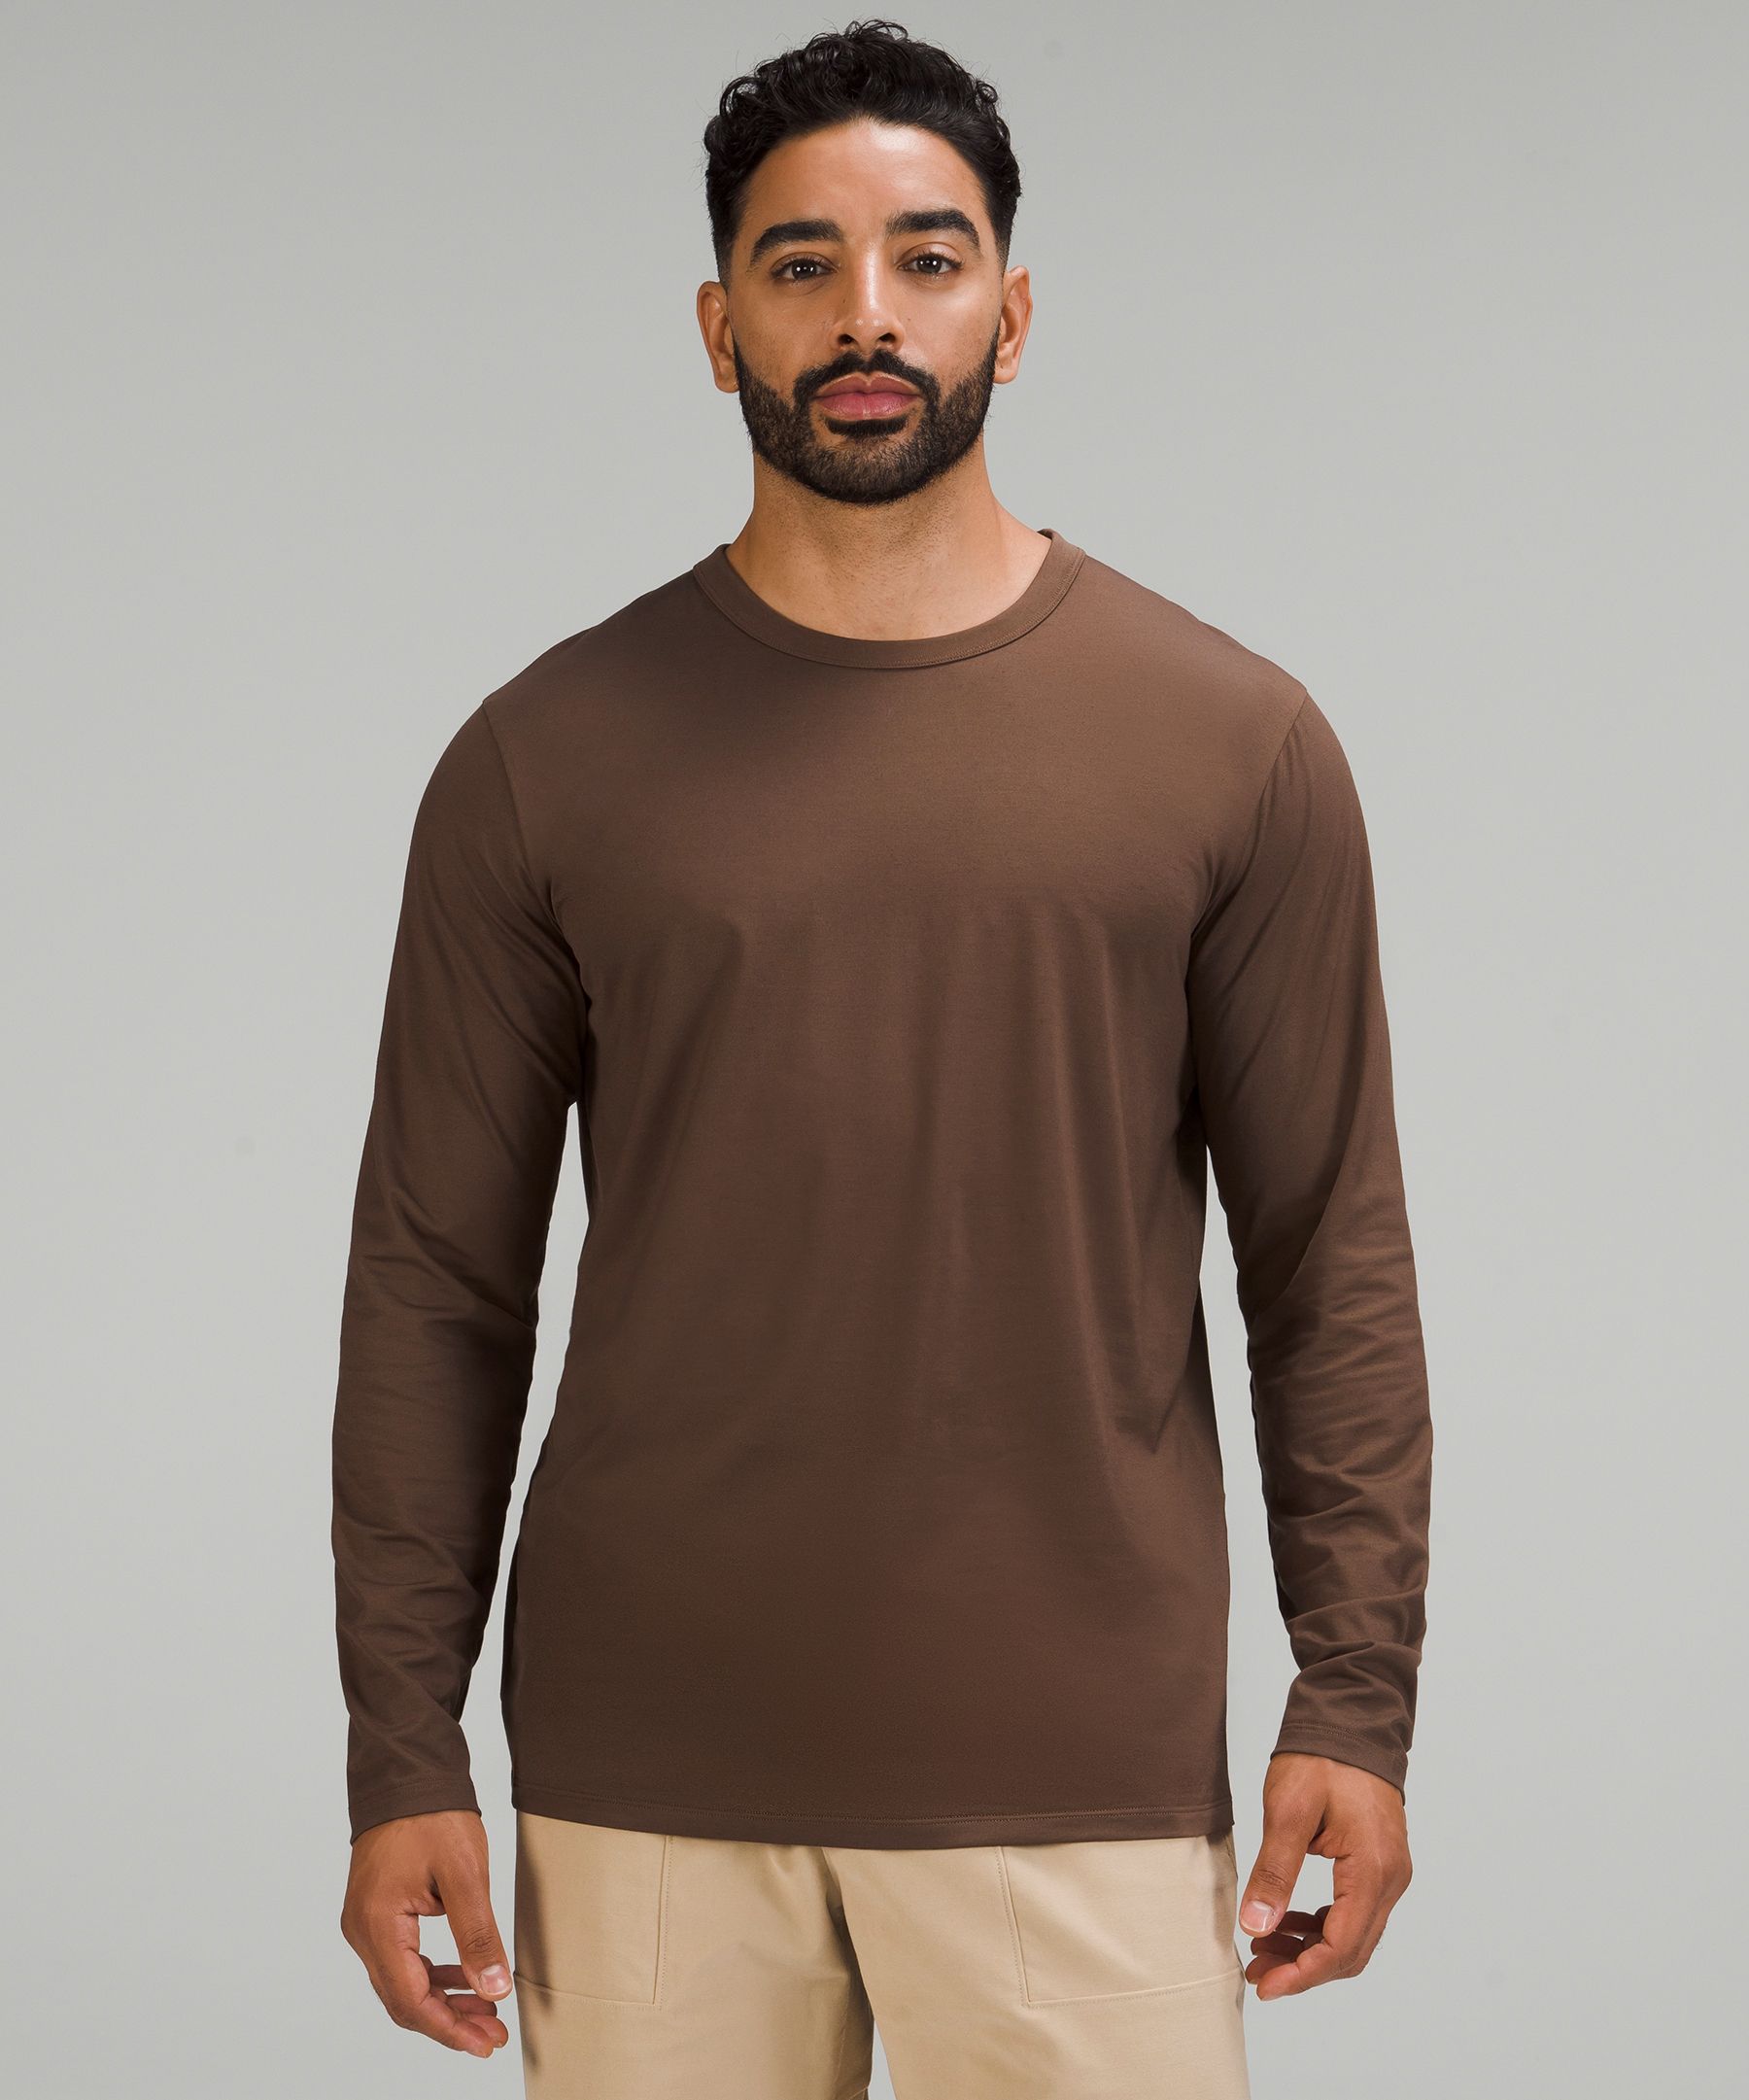 Lululemon Fundamental Long Sleeve Shirt In Brown